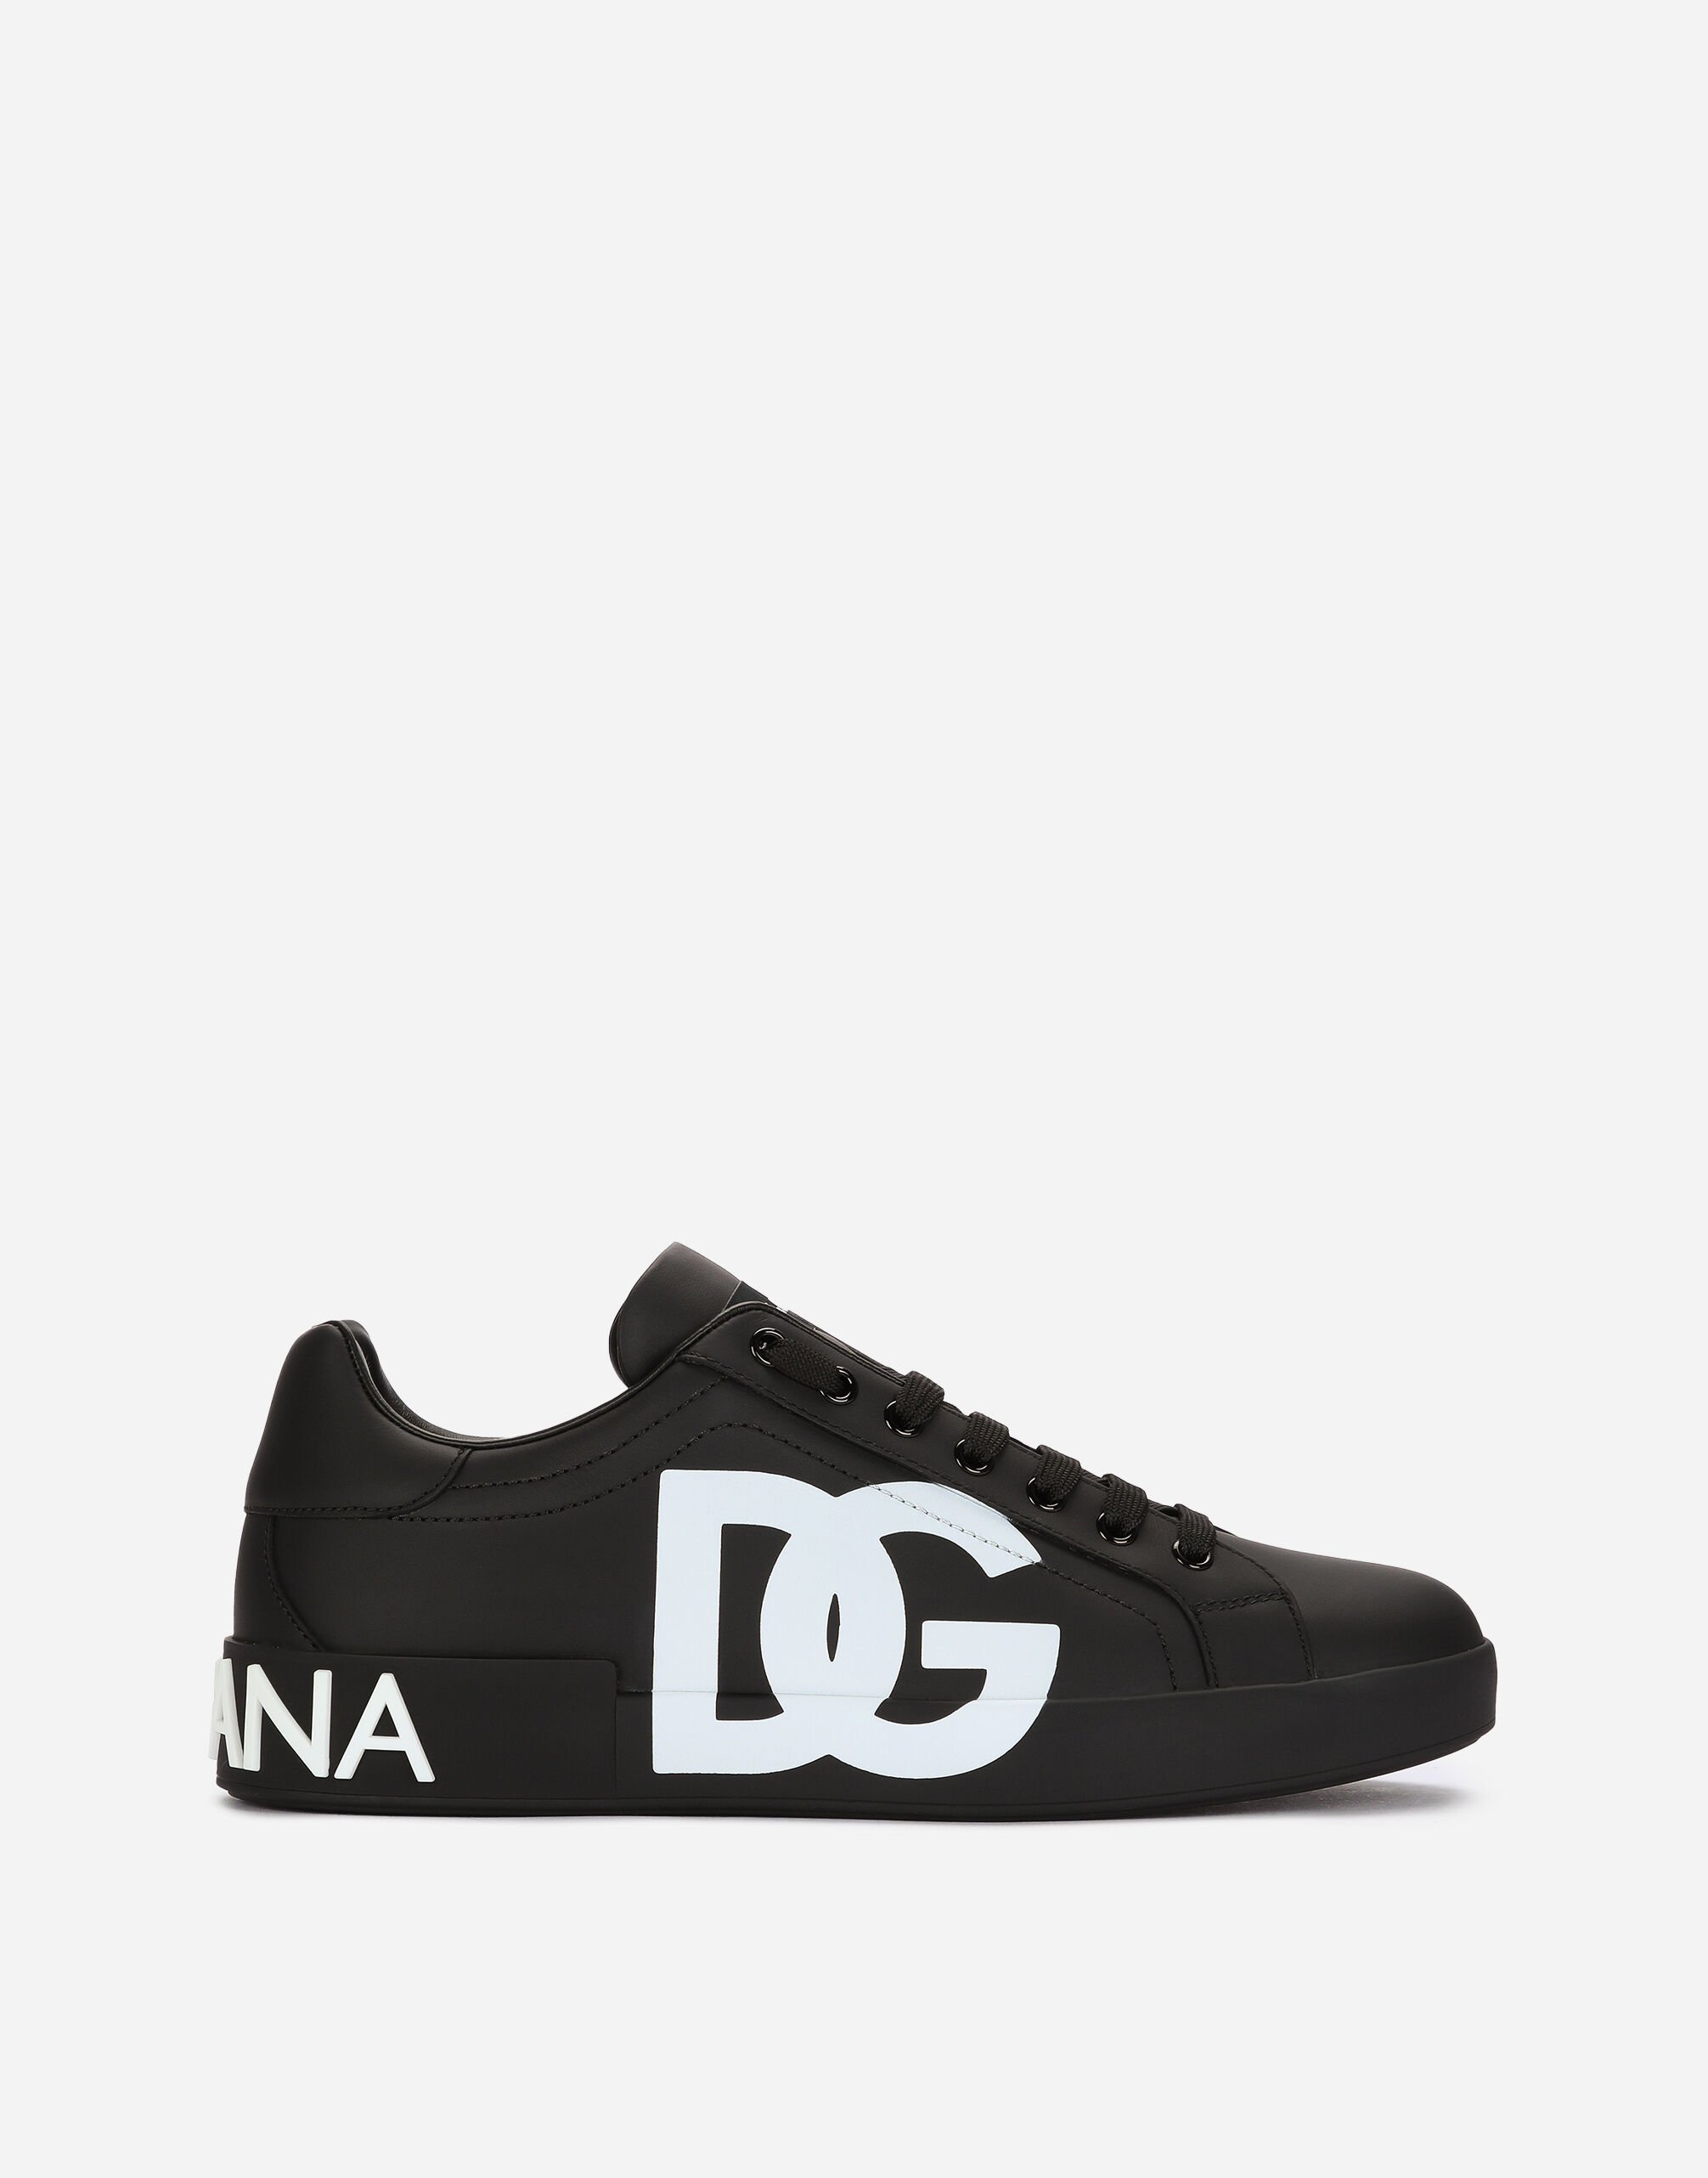 Dolce & Gabbana Sneakers Portofino en cuir de veau nappa à logo DG imprimé Noir CS1772AT390